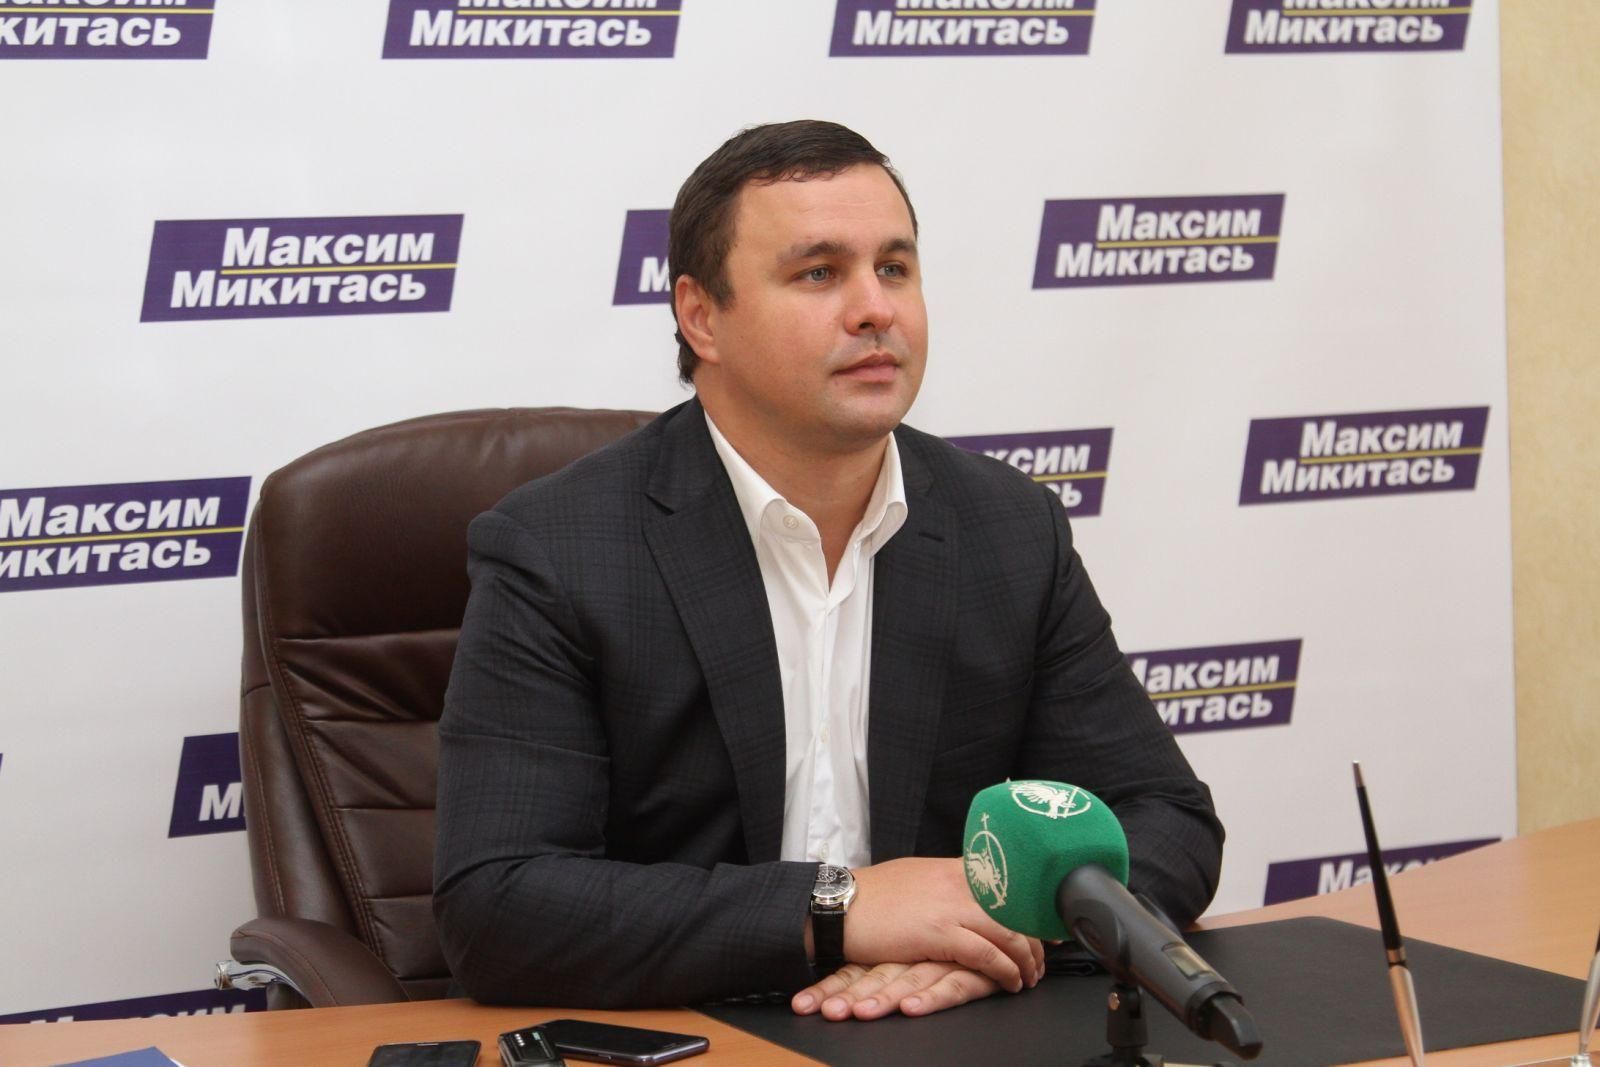 Ексдепутату Микитасю повідомили про підозру: що йому загрожує